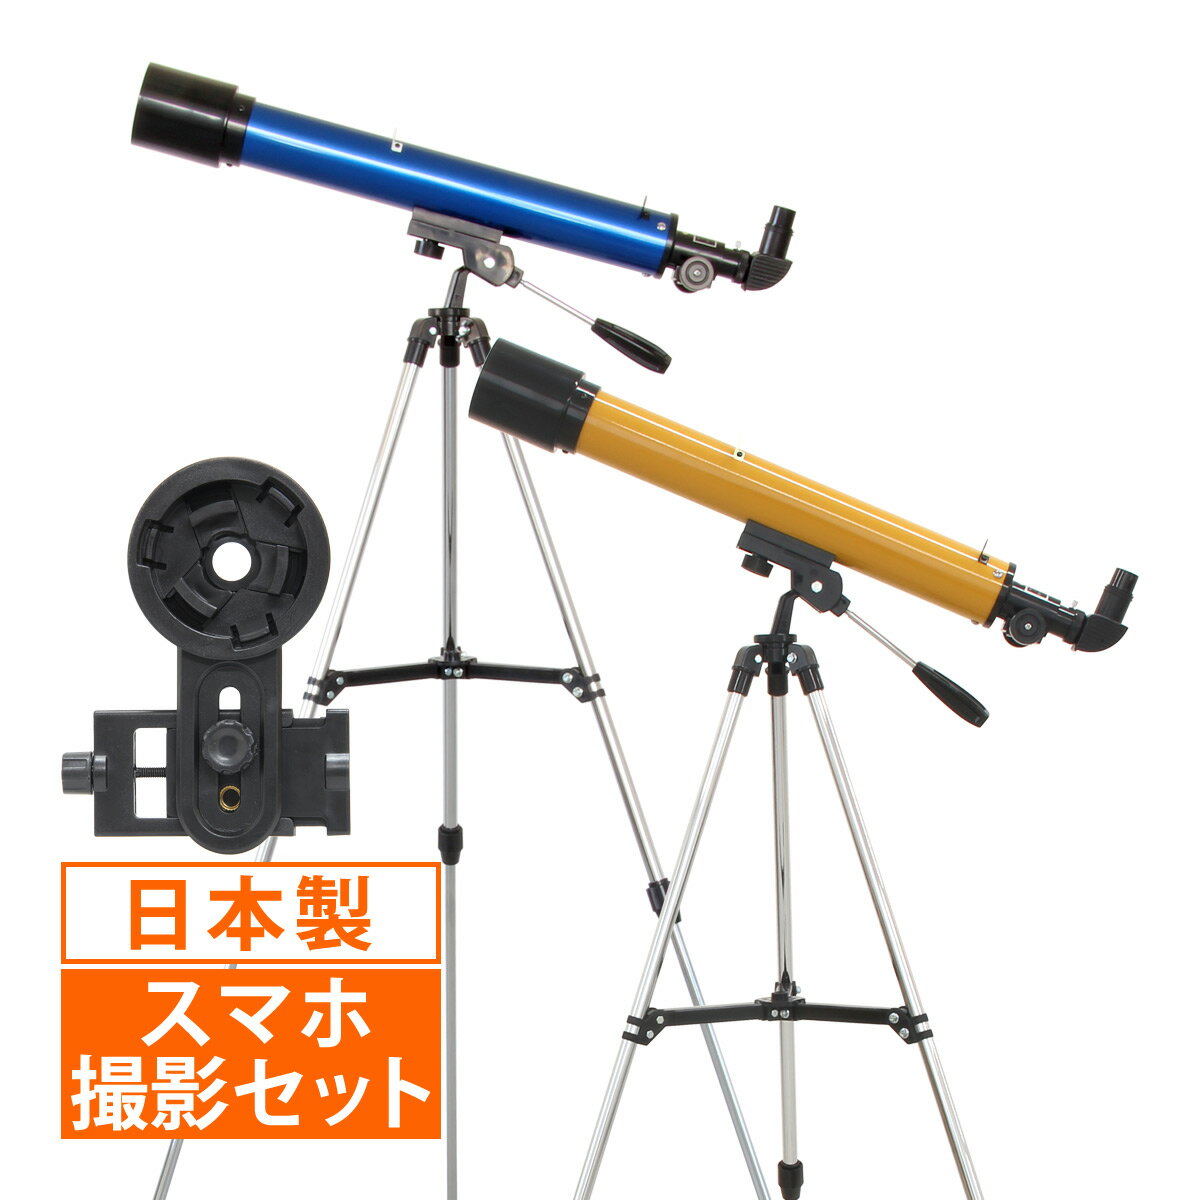 望遠鏡 子供 天体観測 初心者 セット 入学祝い 小学校 屈折式 天体望遠鏡 21倍-210倍 日本製 送料無料  56％OFF